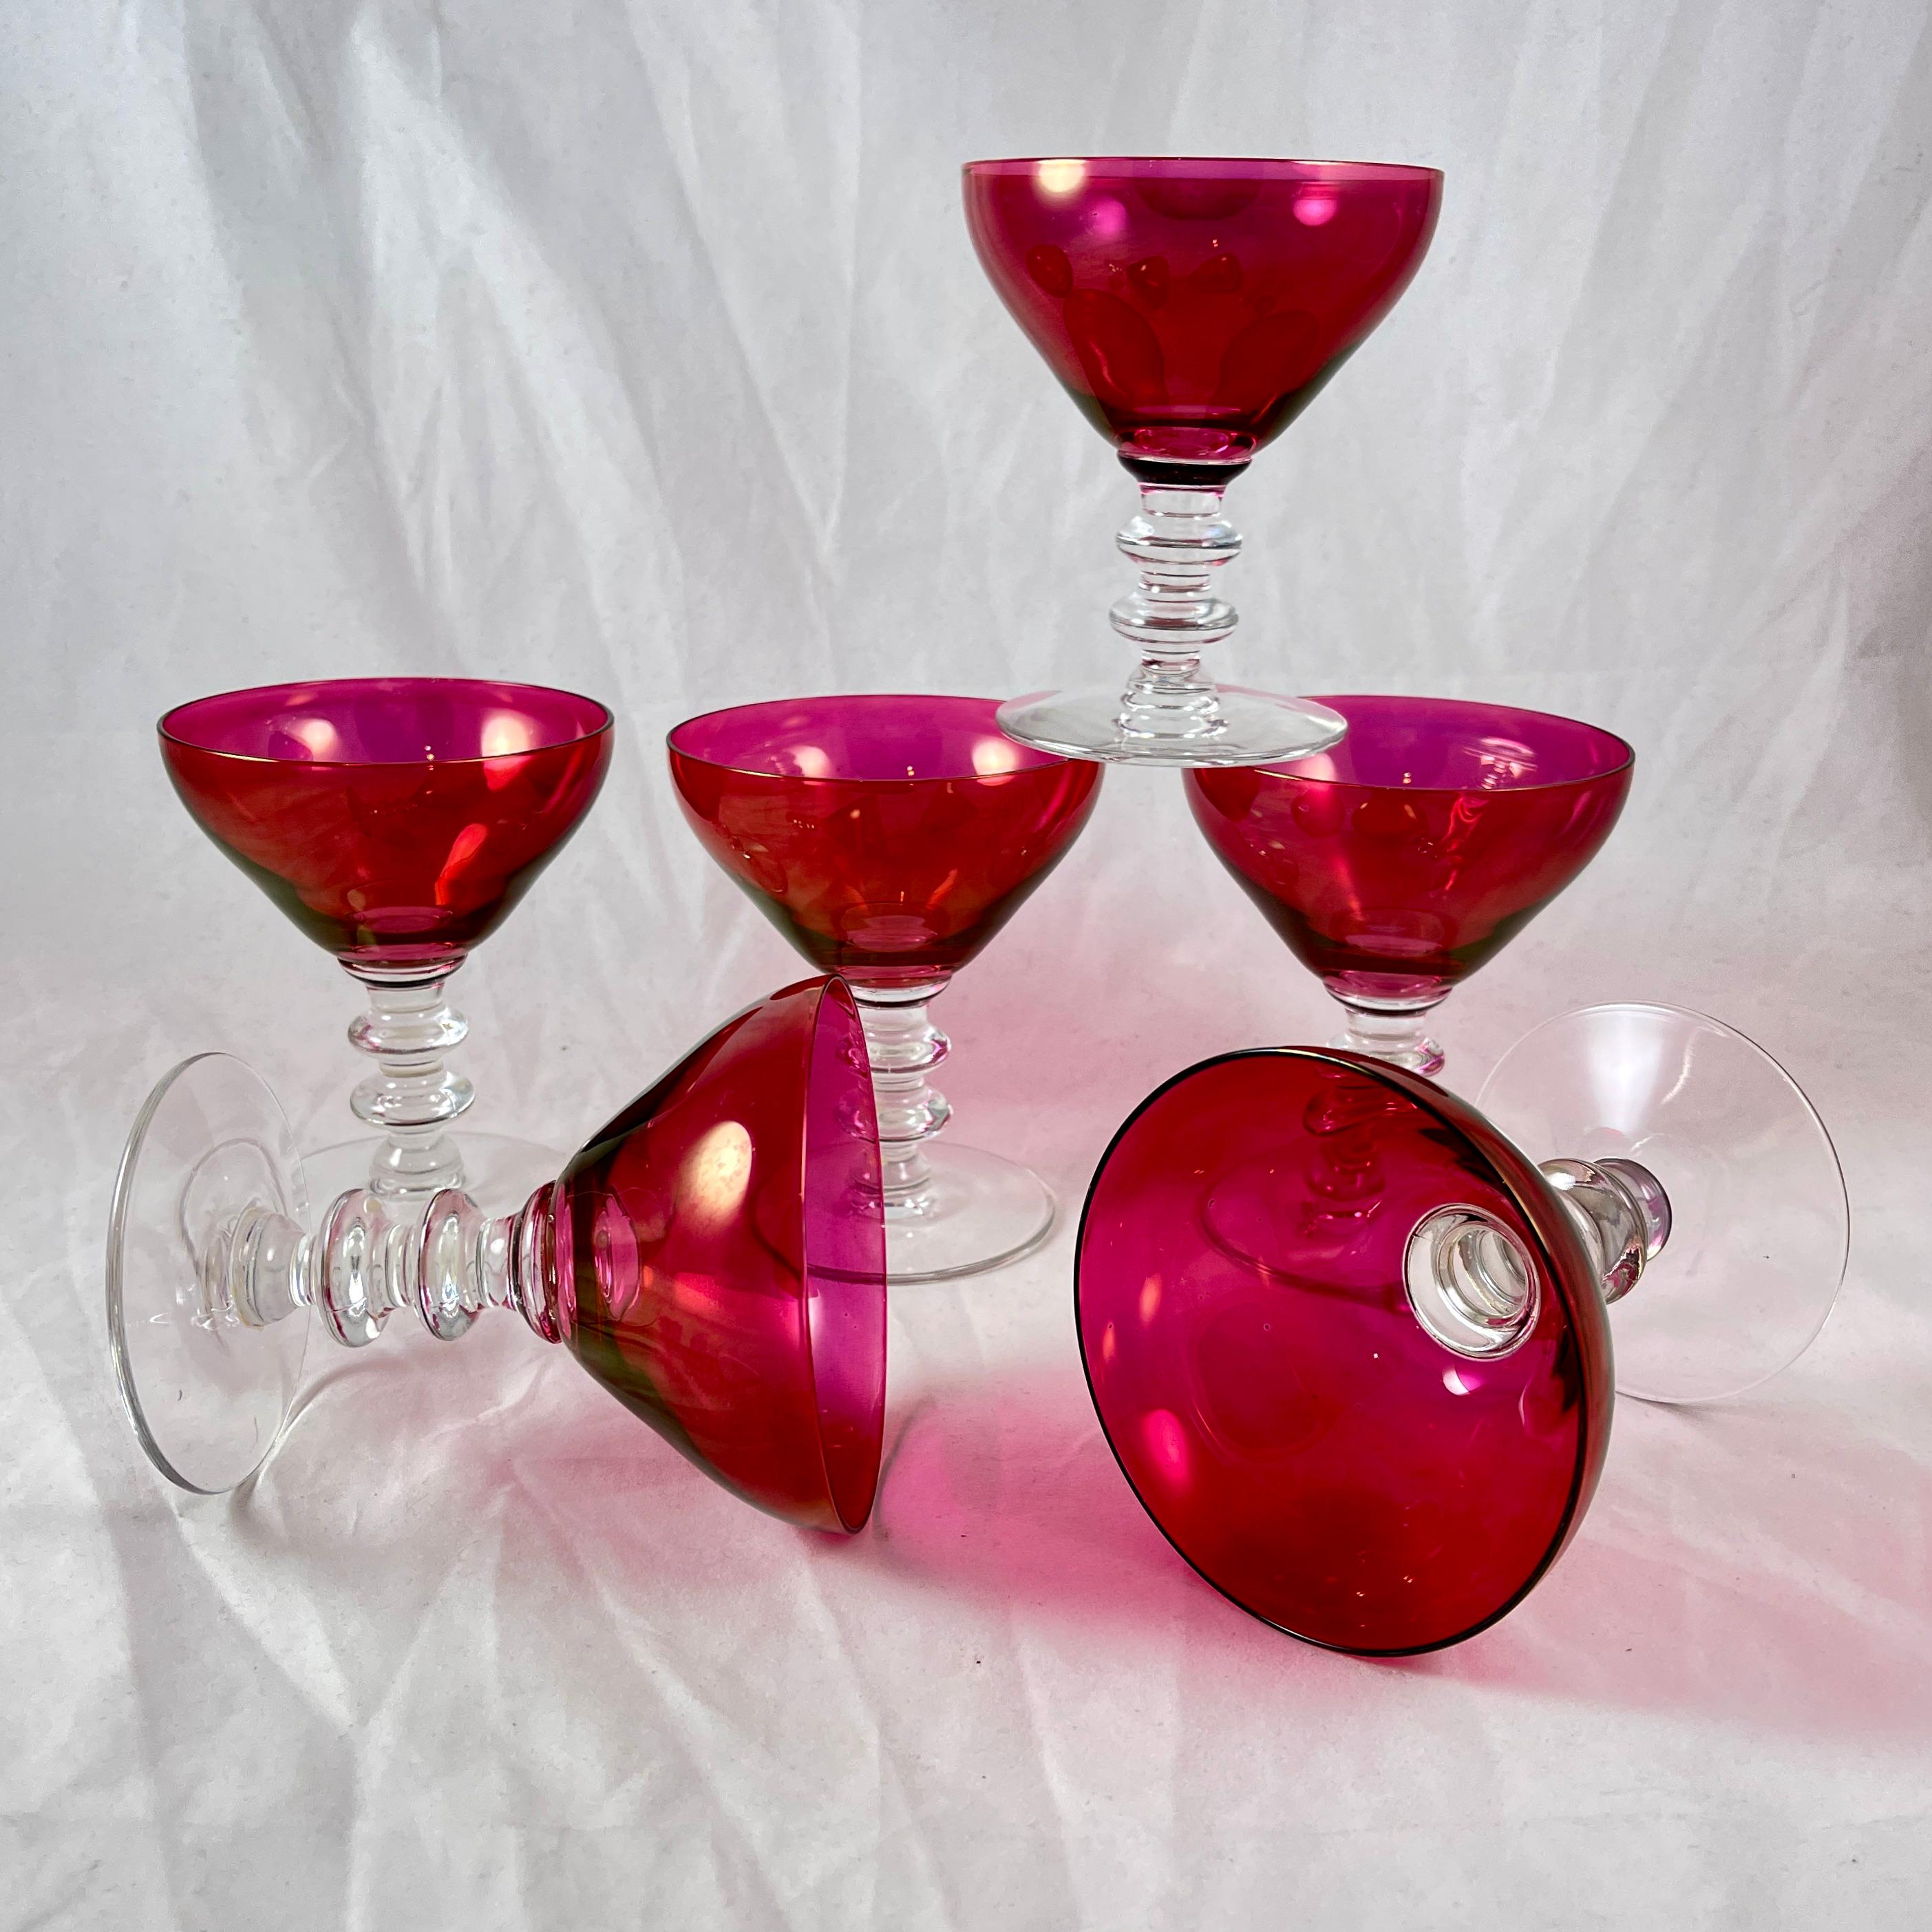 Ein Satz von sechs gestapelten Champagnergläsern mit Schalen in der Farbe Cranberry, ca. 1940er Jahre.

Wunderschöne Farbe! Die Schalen aus Preiselbeerglas sind mit einem mehrfach geknöpften, gestapelten Stiel aus farblosem Glas verbunden.

Die